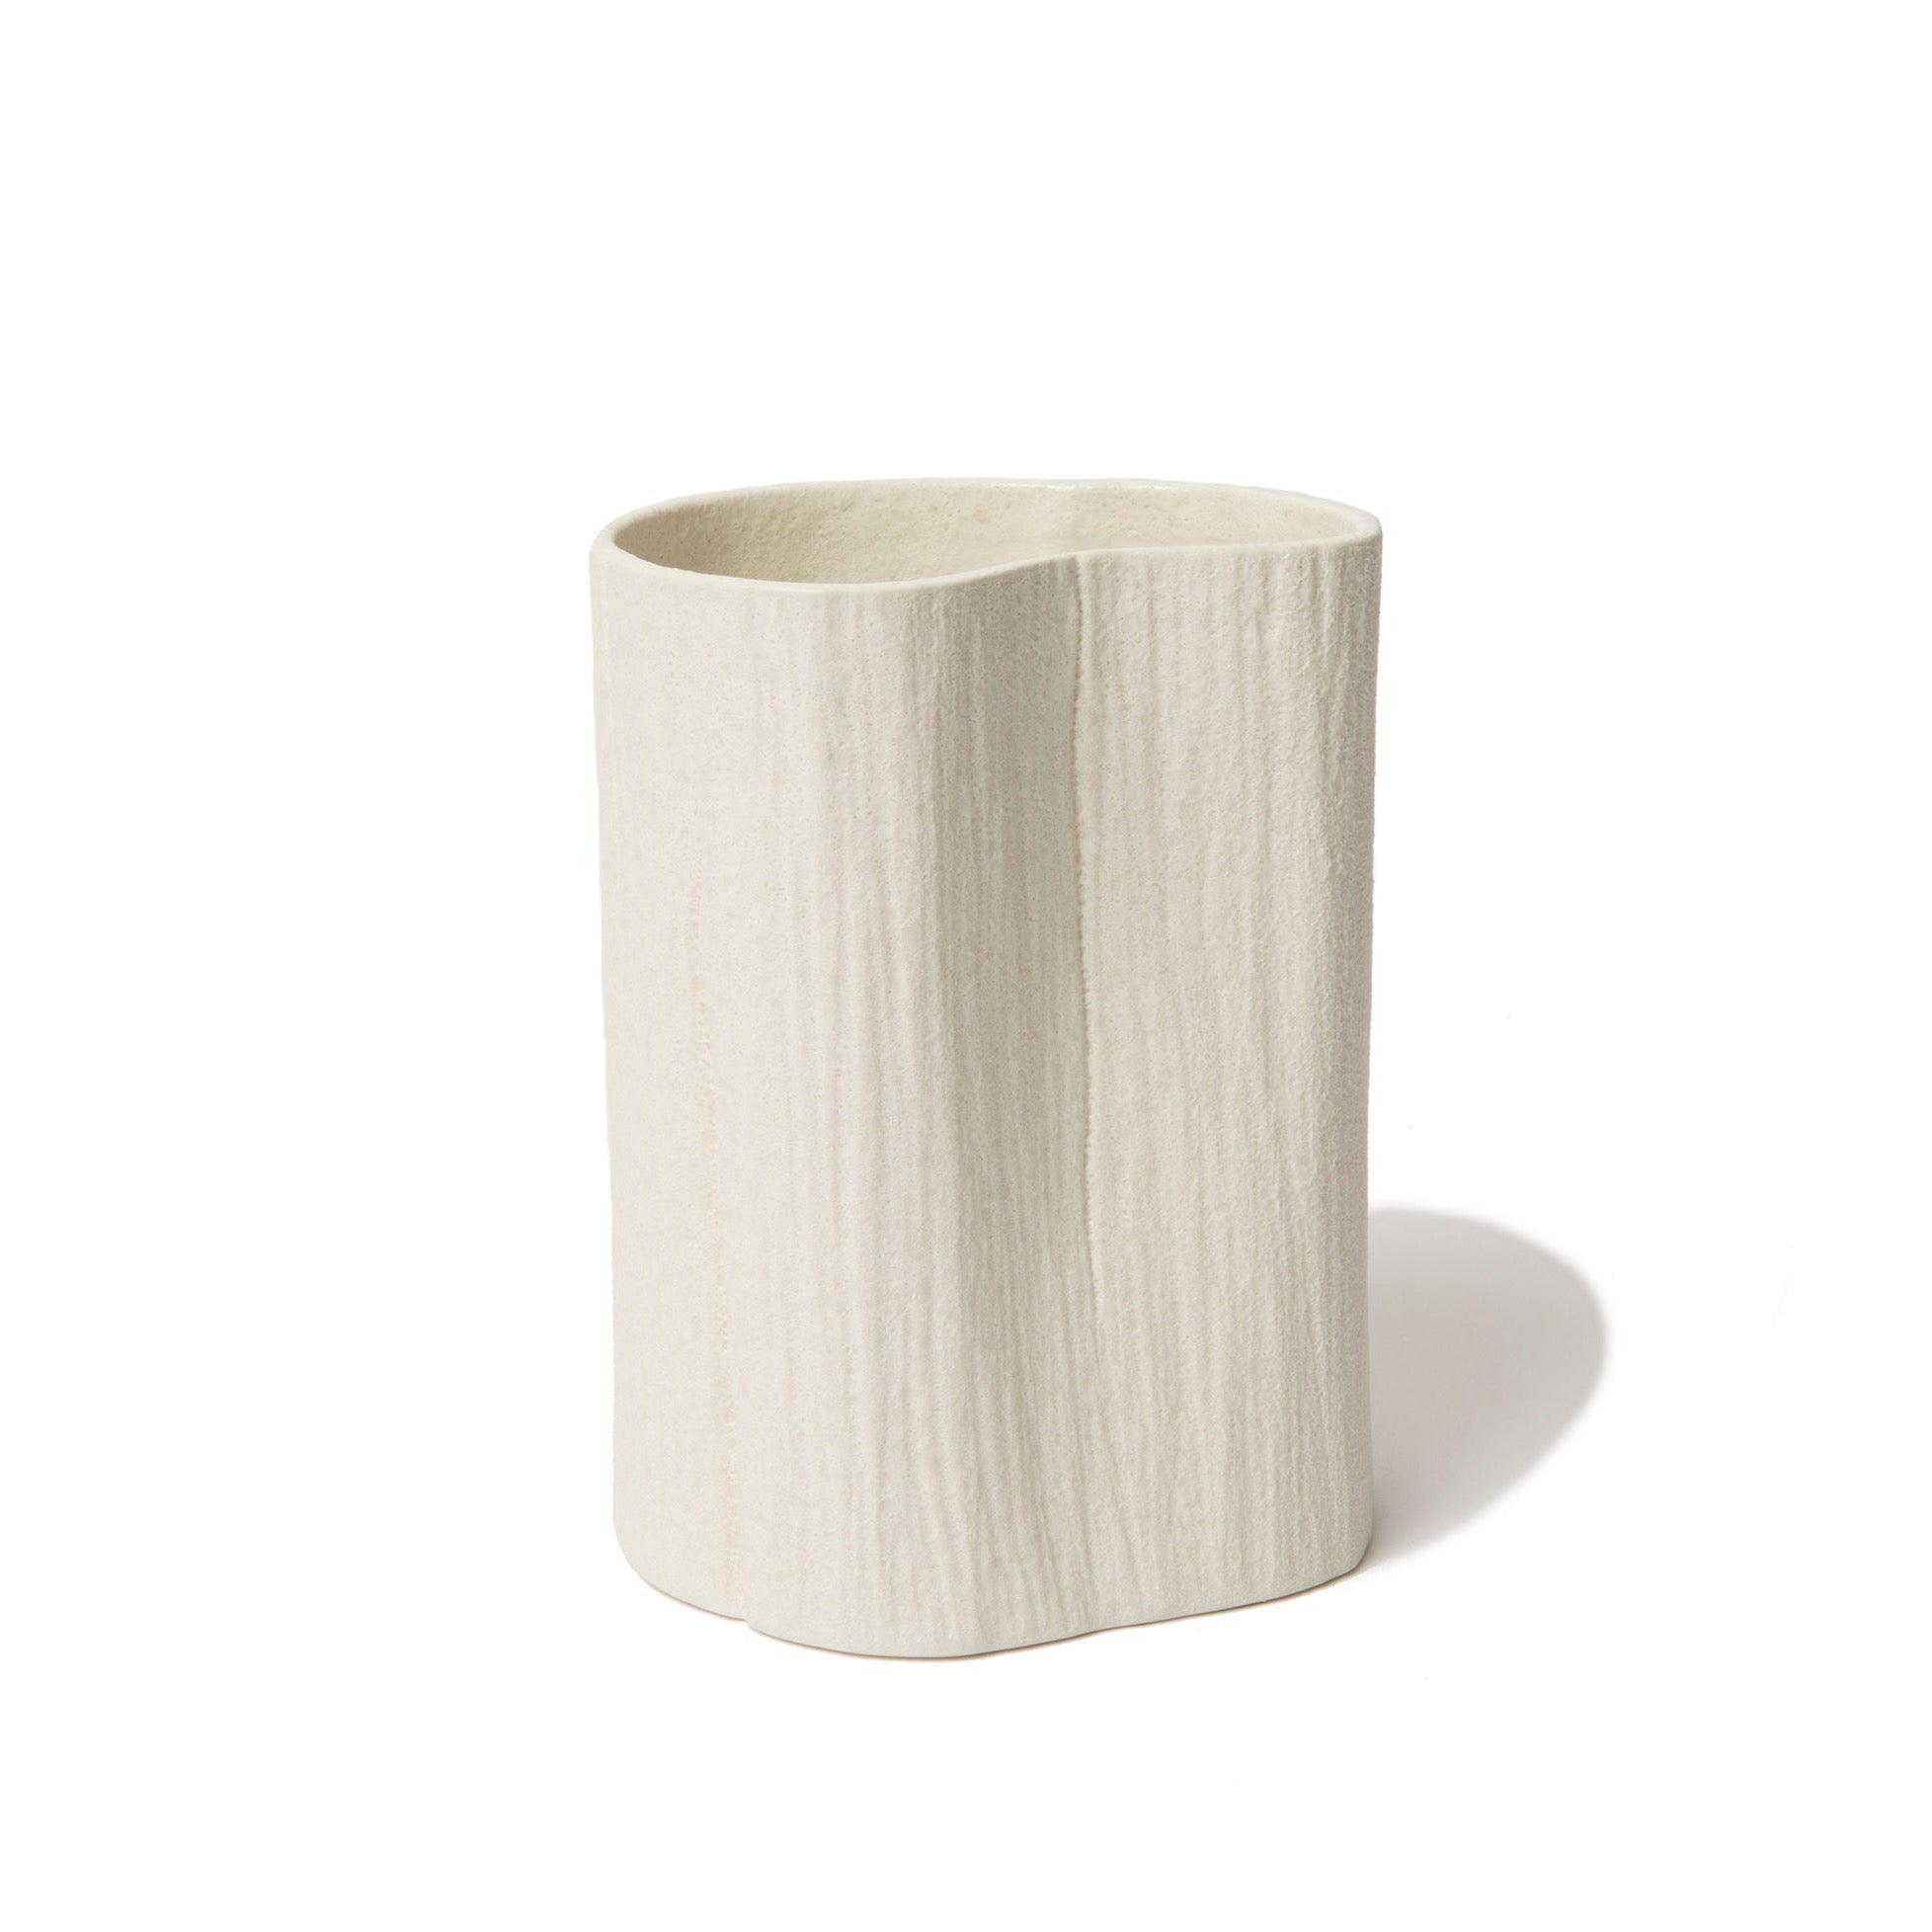 Stam Vase by Lindform